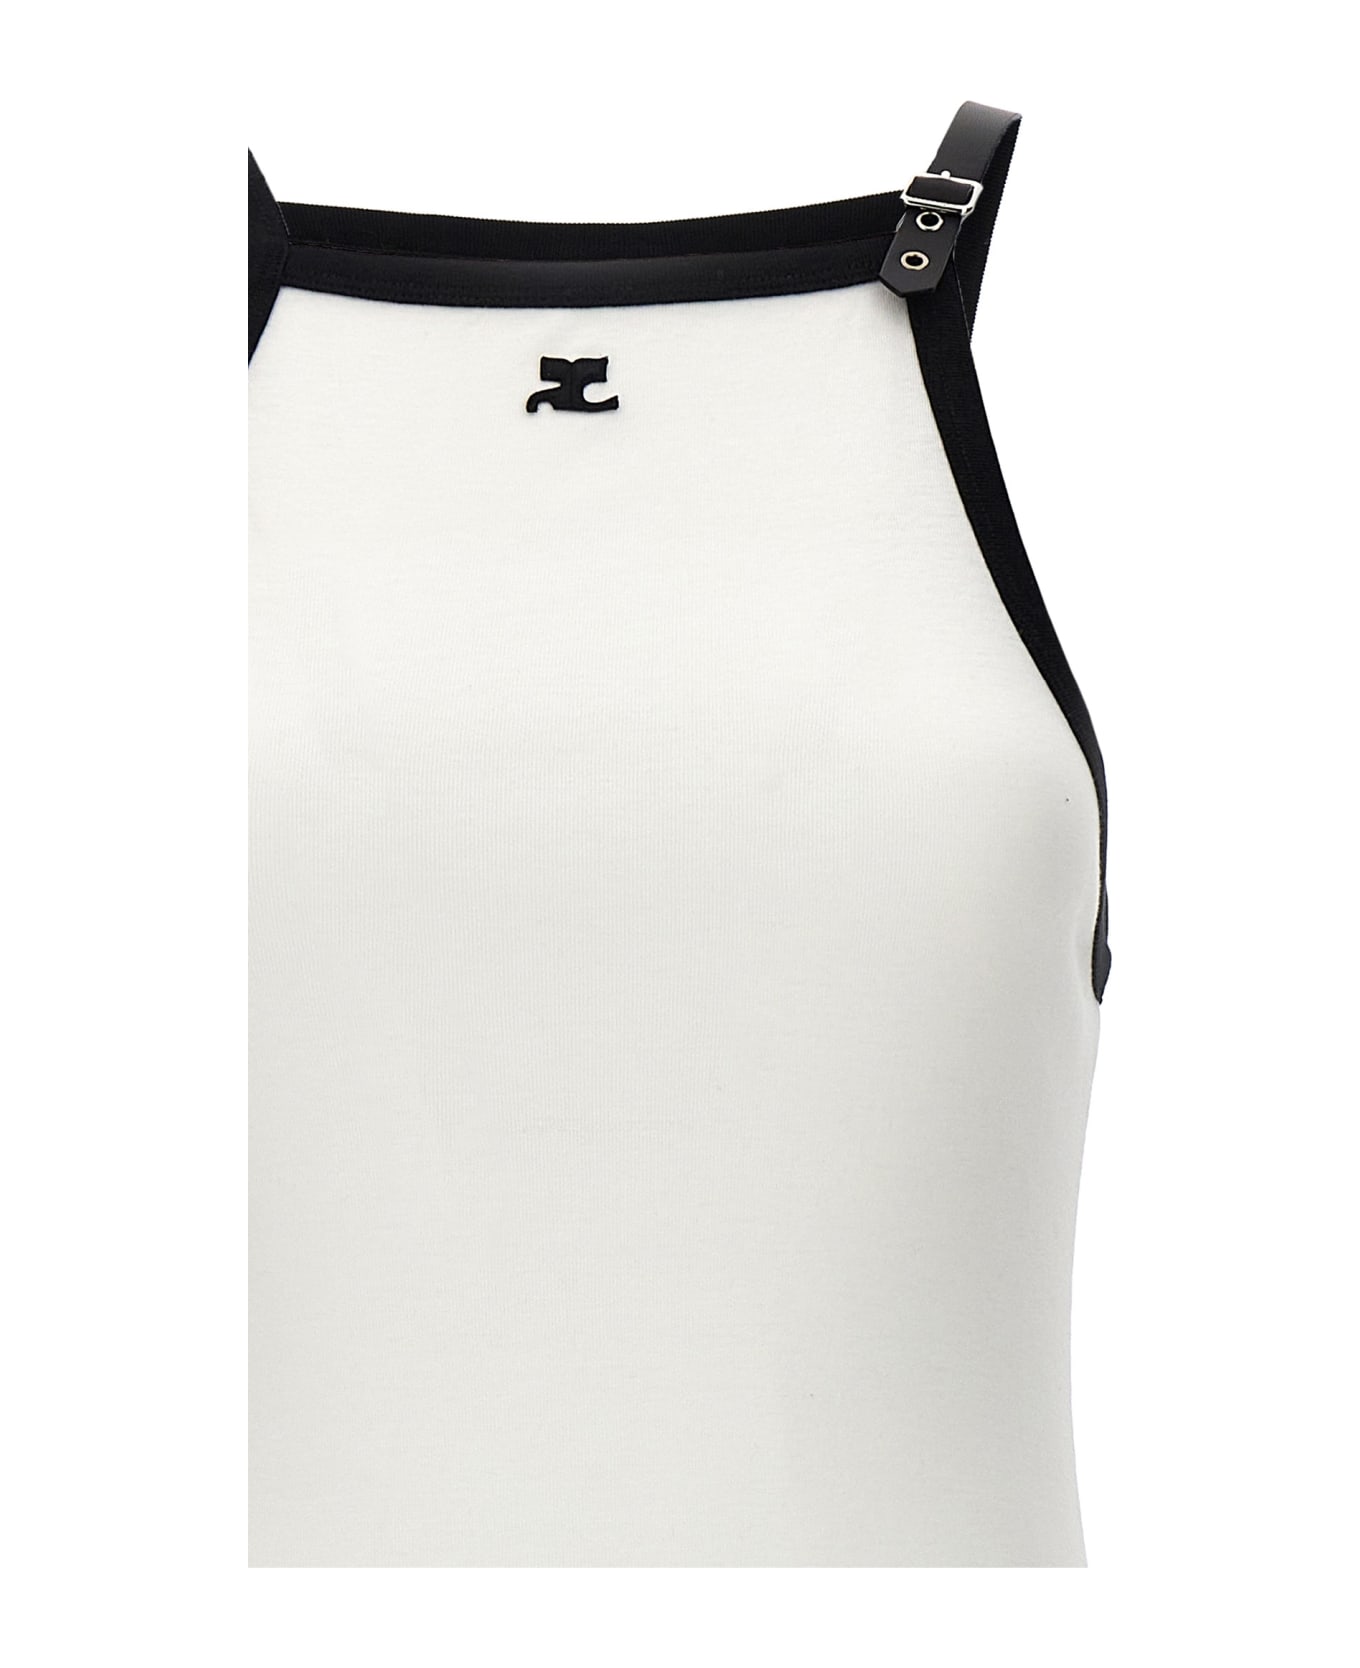 Courrèges 'buckle Contrast' Dress - White/Black